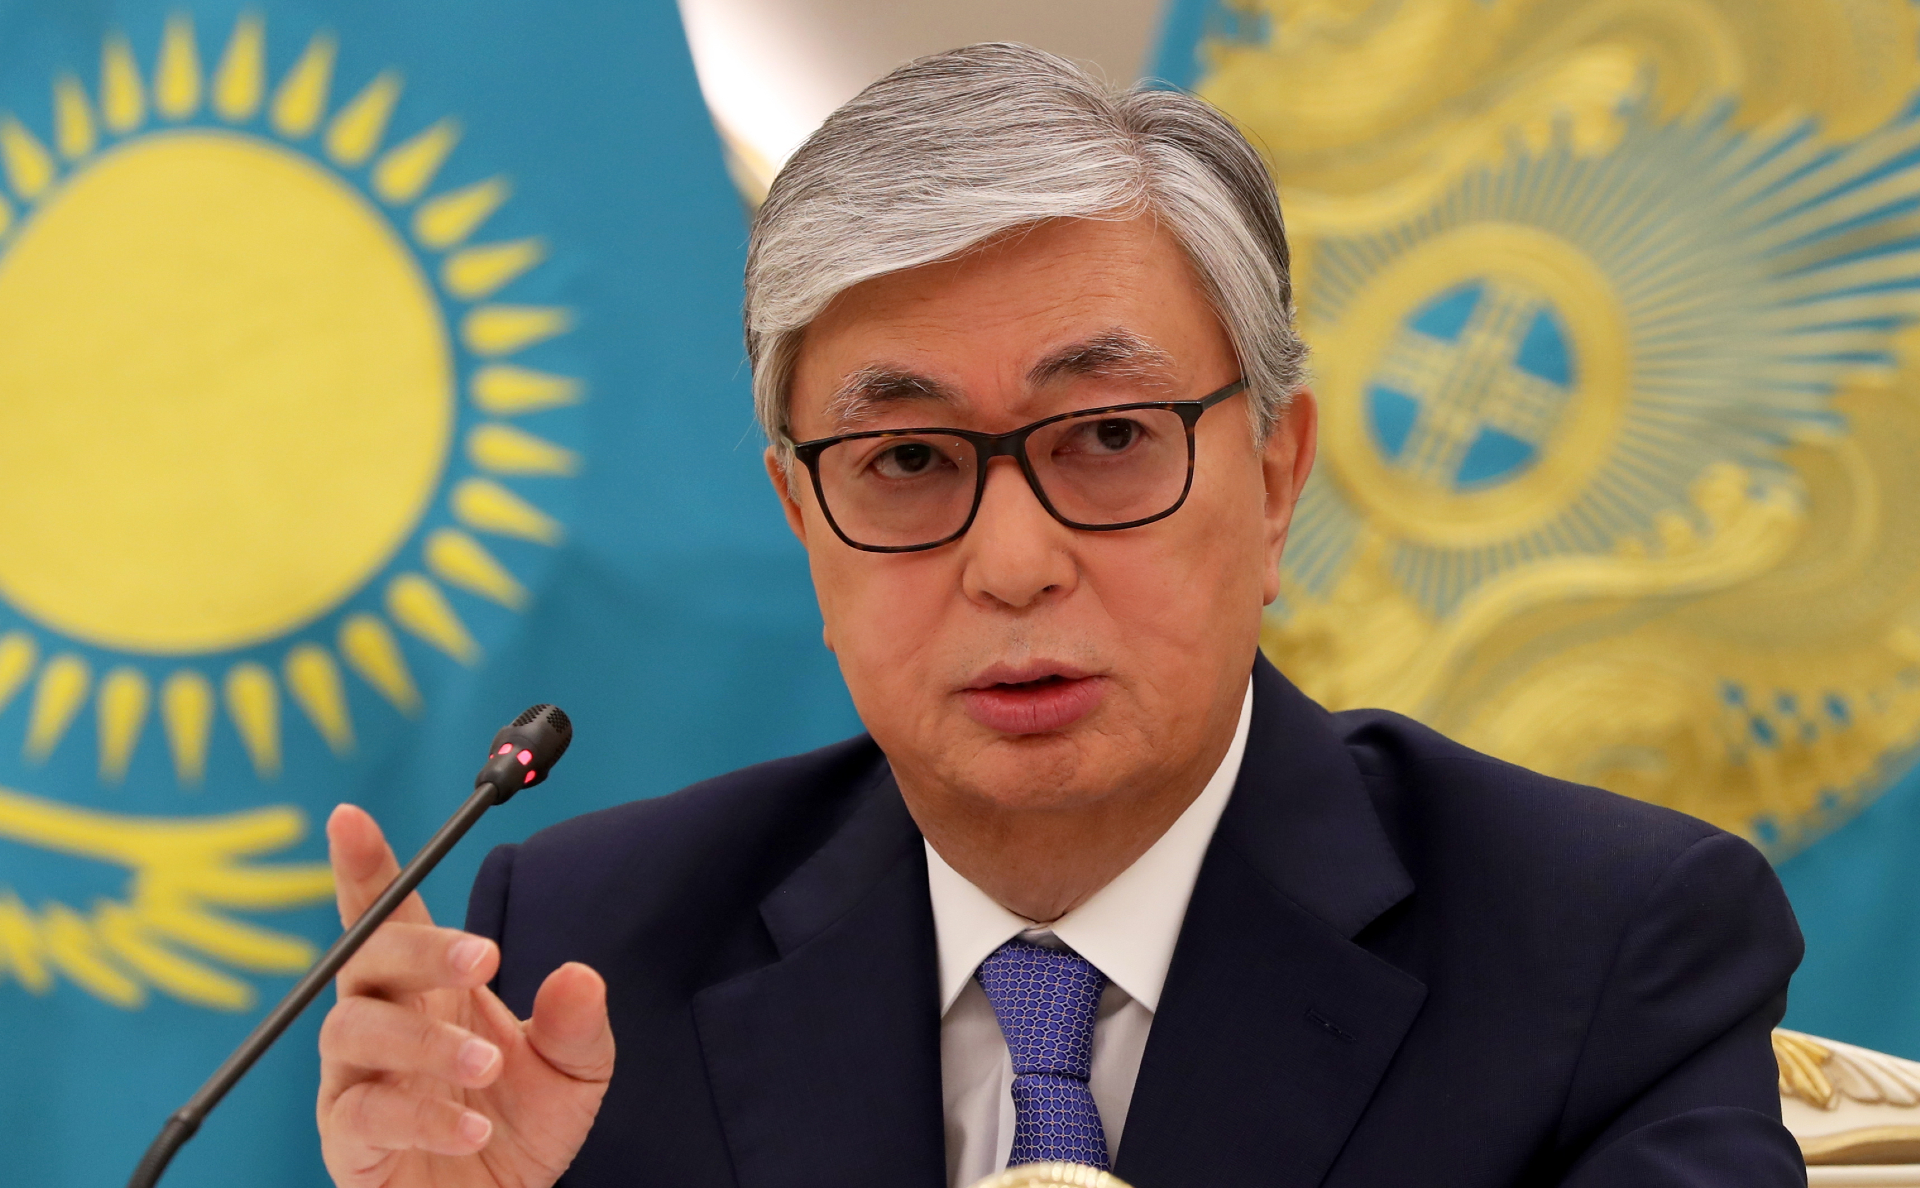 Касым-Жомарт Токаев вступил в должность президента Казахстана :: Политика  :: РБК